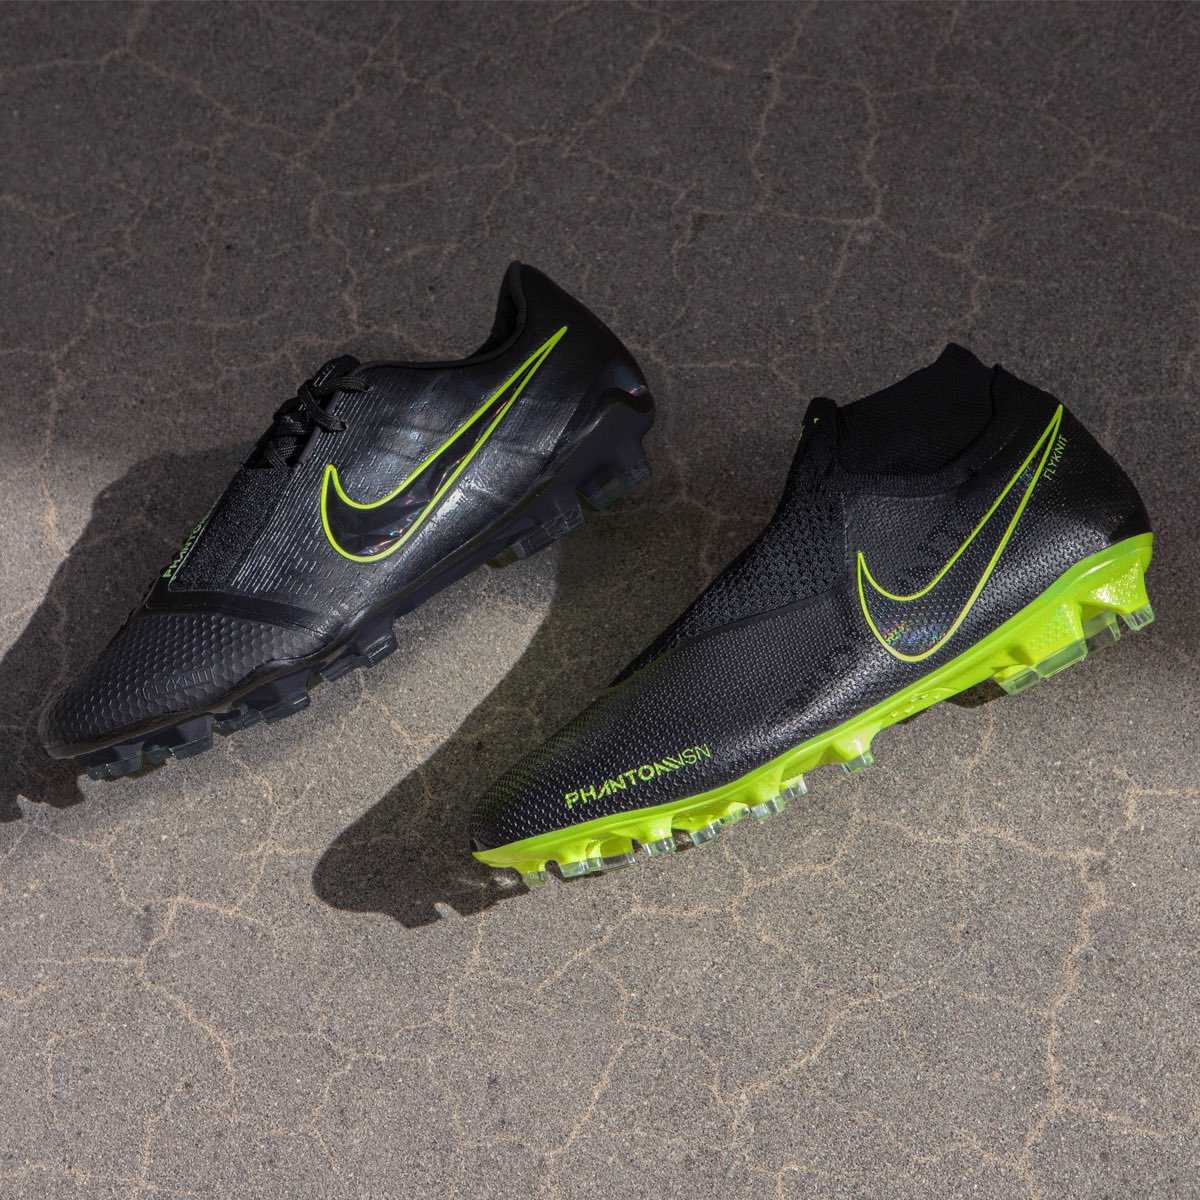 Hacia atrás Inválido Trascender Nike 'Under the Radar' 2019 Boots Back Released - Incl. Next-Gen Tiempo +  Mercurials - Footy Headlines